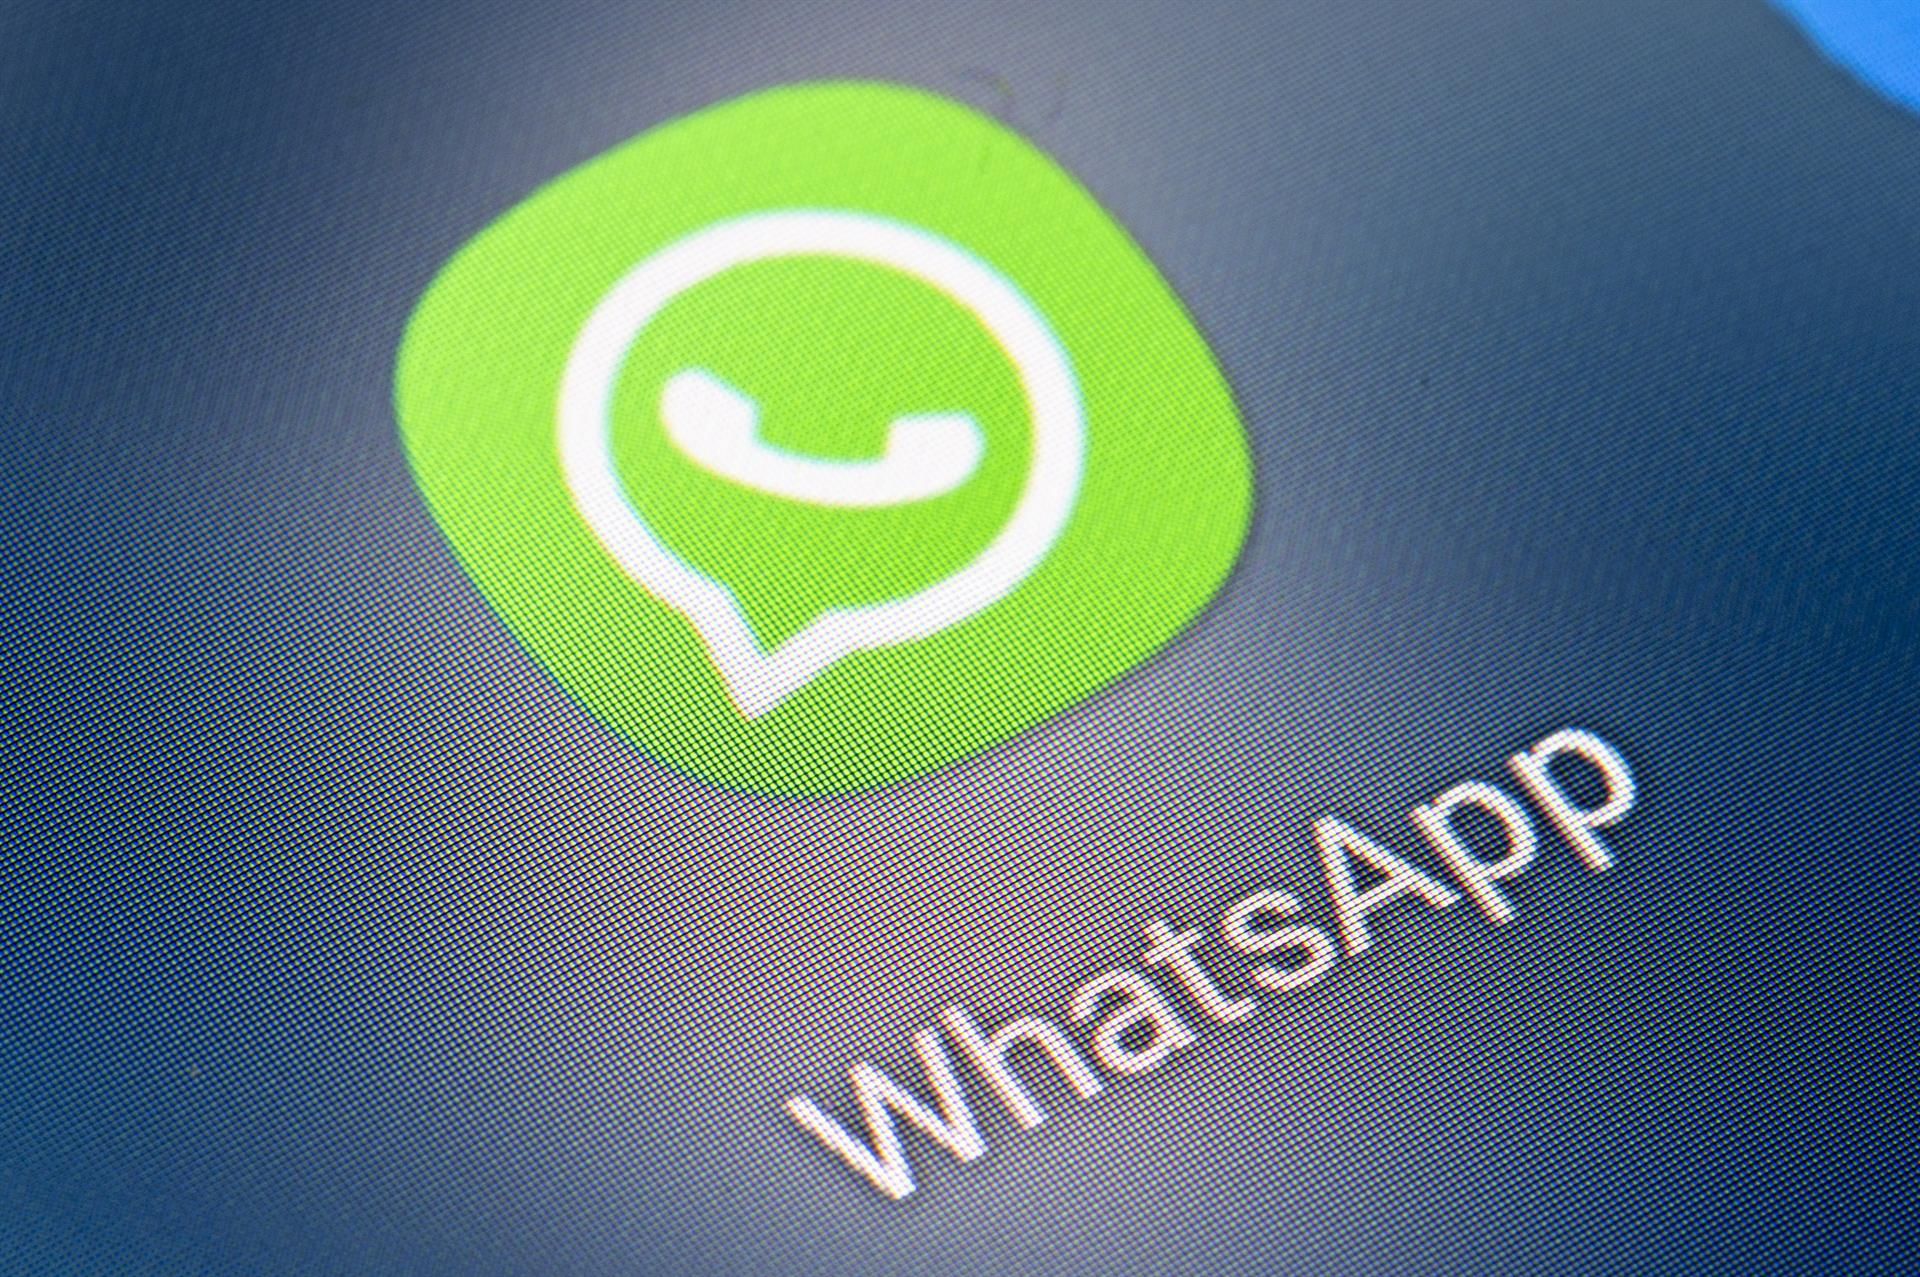 'WhatsApp' sufre una caída que impide a los usuarios enviar y recibir mensajes